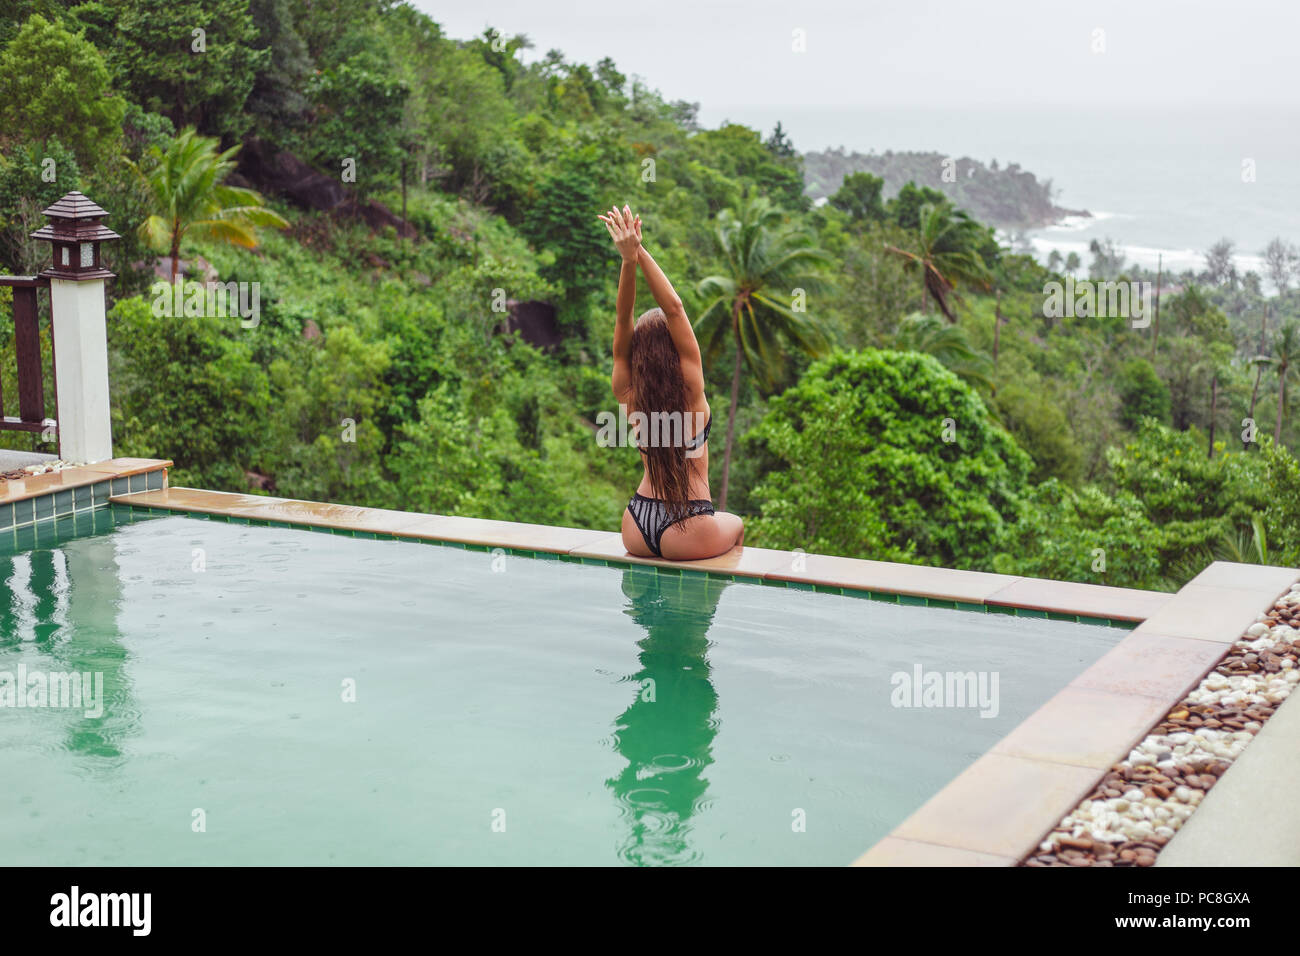 Vista posteriore di una ragazza con i capelli lunghi che pongono a piscina su resort tropicale Foto Stock